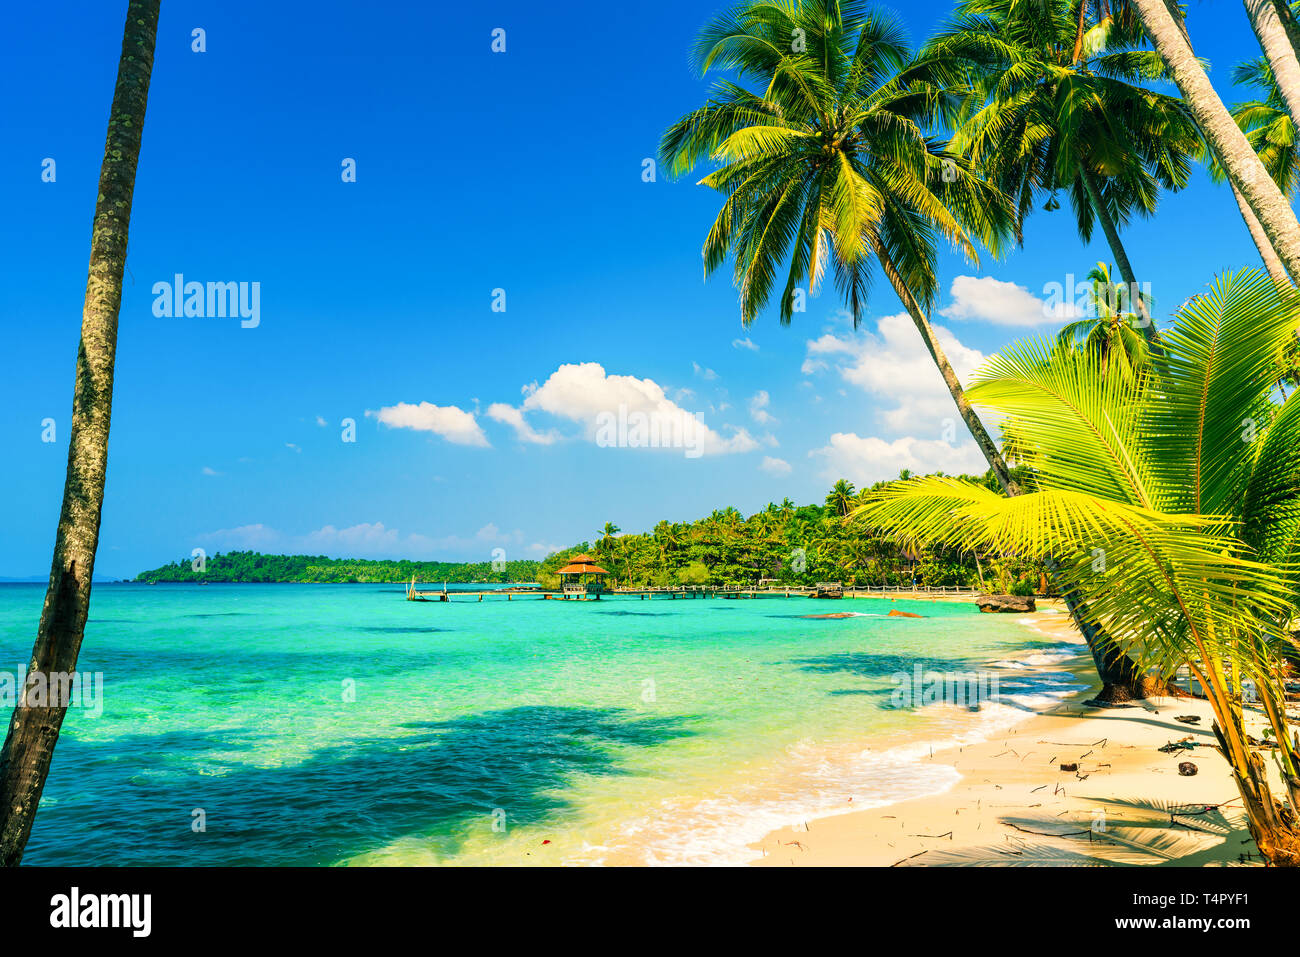 Plage tropicale avec l'eau de mer cristalline, décor palmier sur la lagune et l'incroyable fond ciel bleu. L'Asie, Thaïlande Banque D'Images